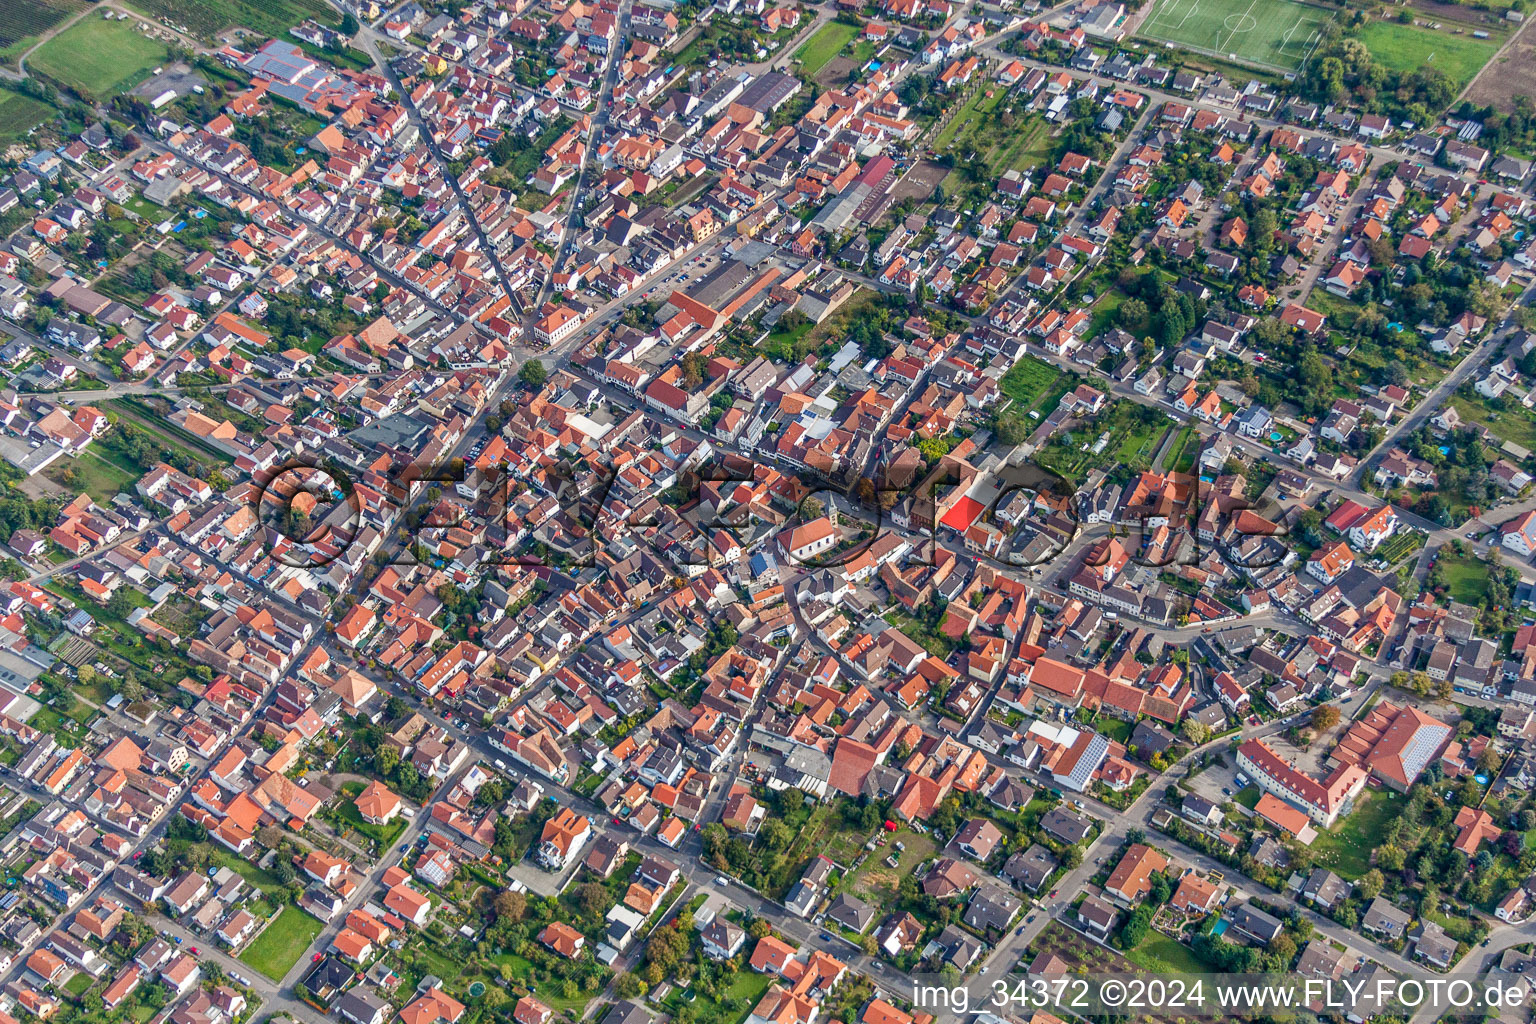 Luftbild von Ortsansicht der Straßen und Häuser der Wohngebiete in Weisenheim am Sand im Bundesland Rheinland-Pfalz, Deutschland